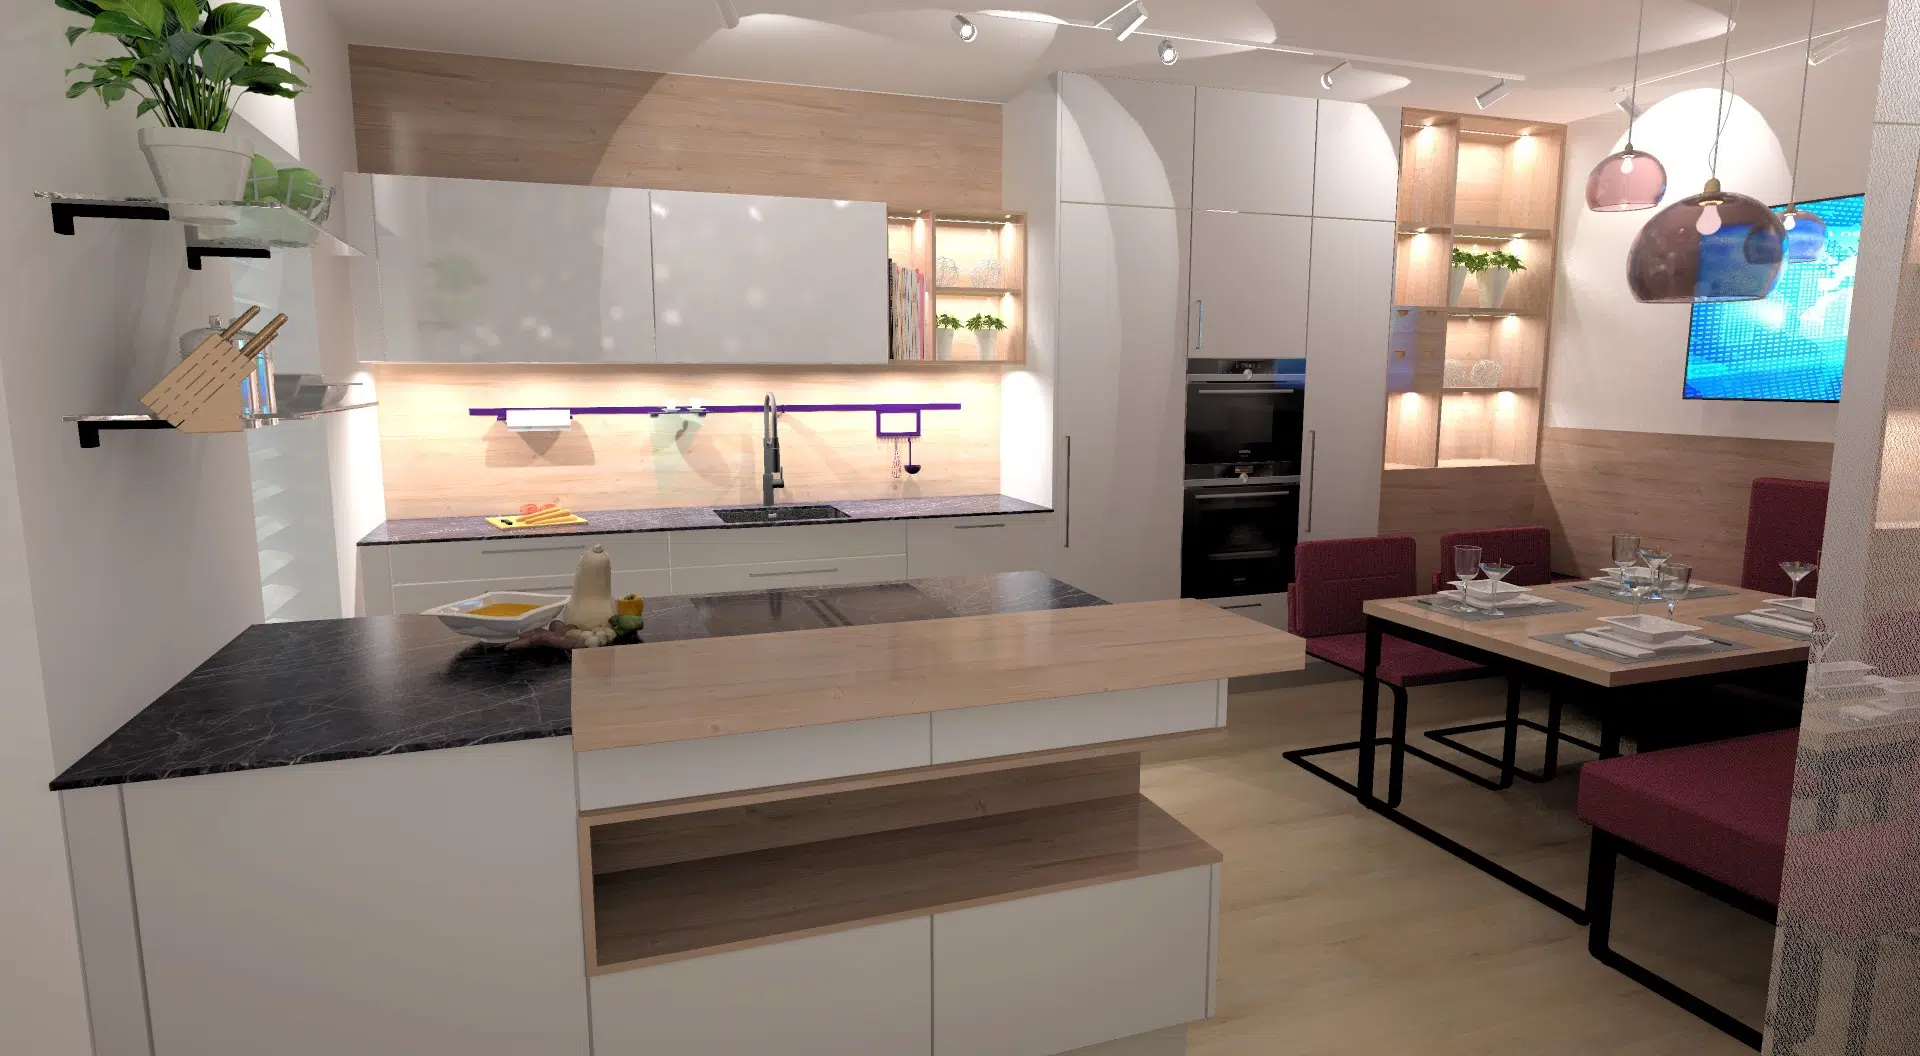 3D Küchenplanunggeplant von einem Küchenplaner und Küchenprofi als maßgeschneiderte Küche